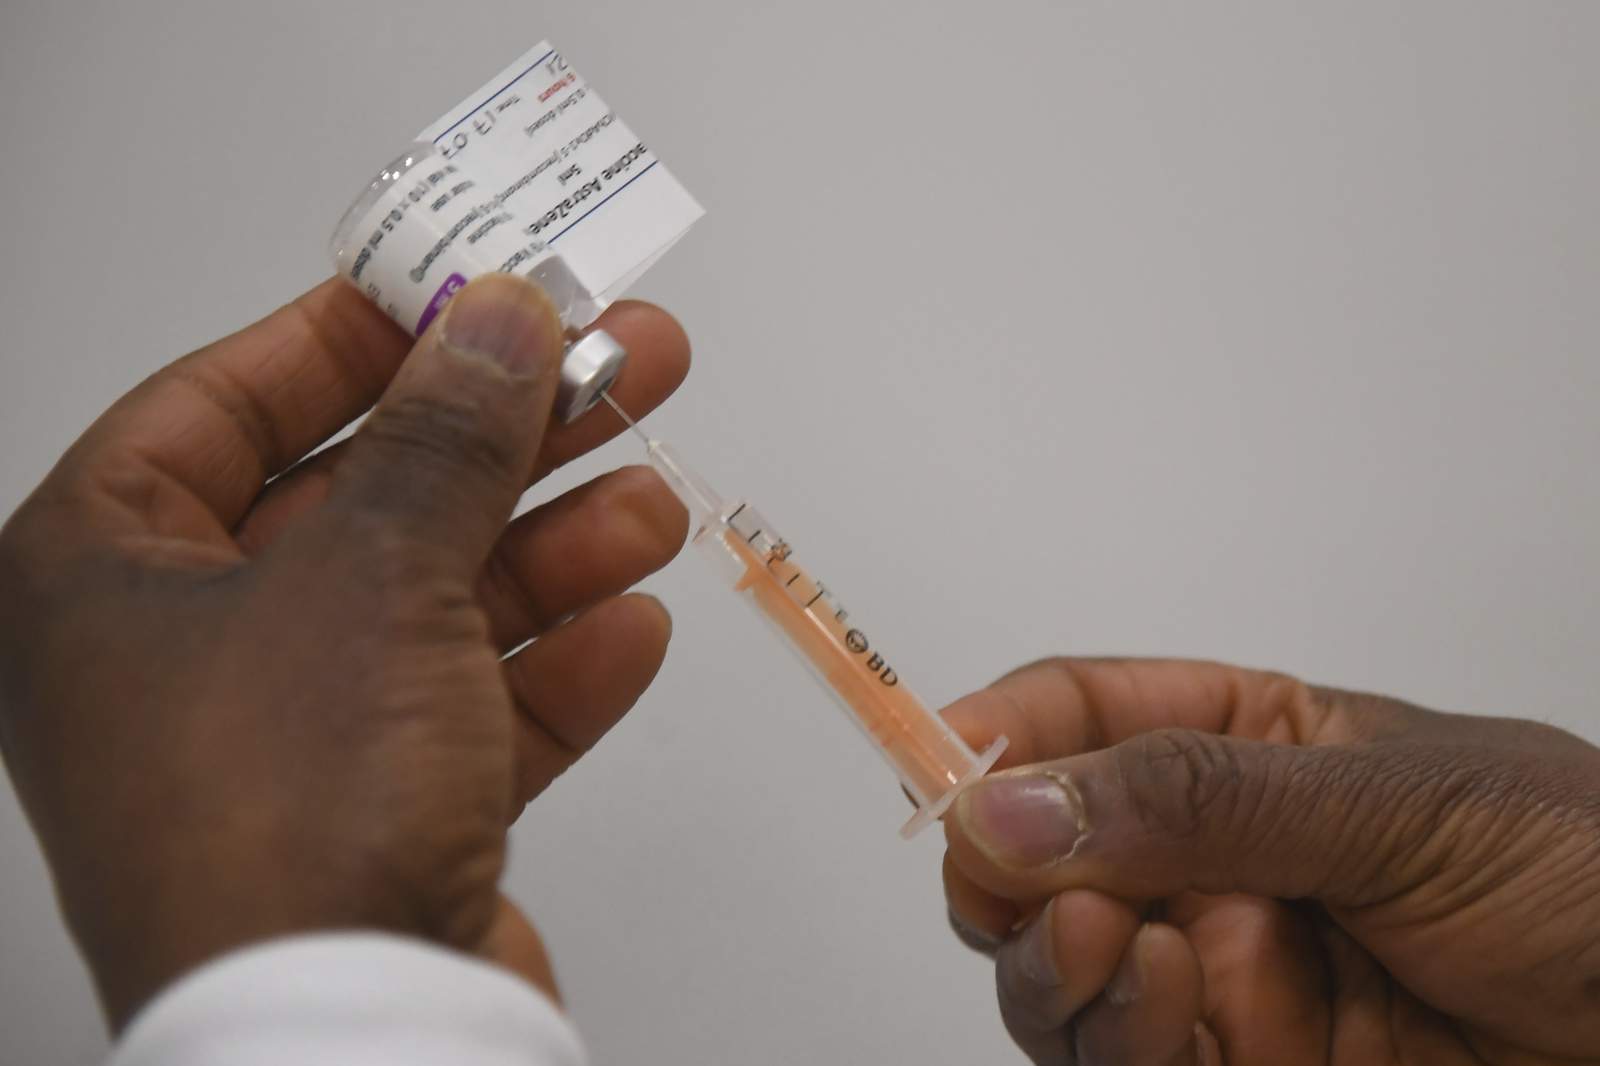 Detroit Mayor Duggan shares vaccine distribution, scheduling info